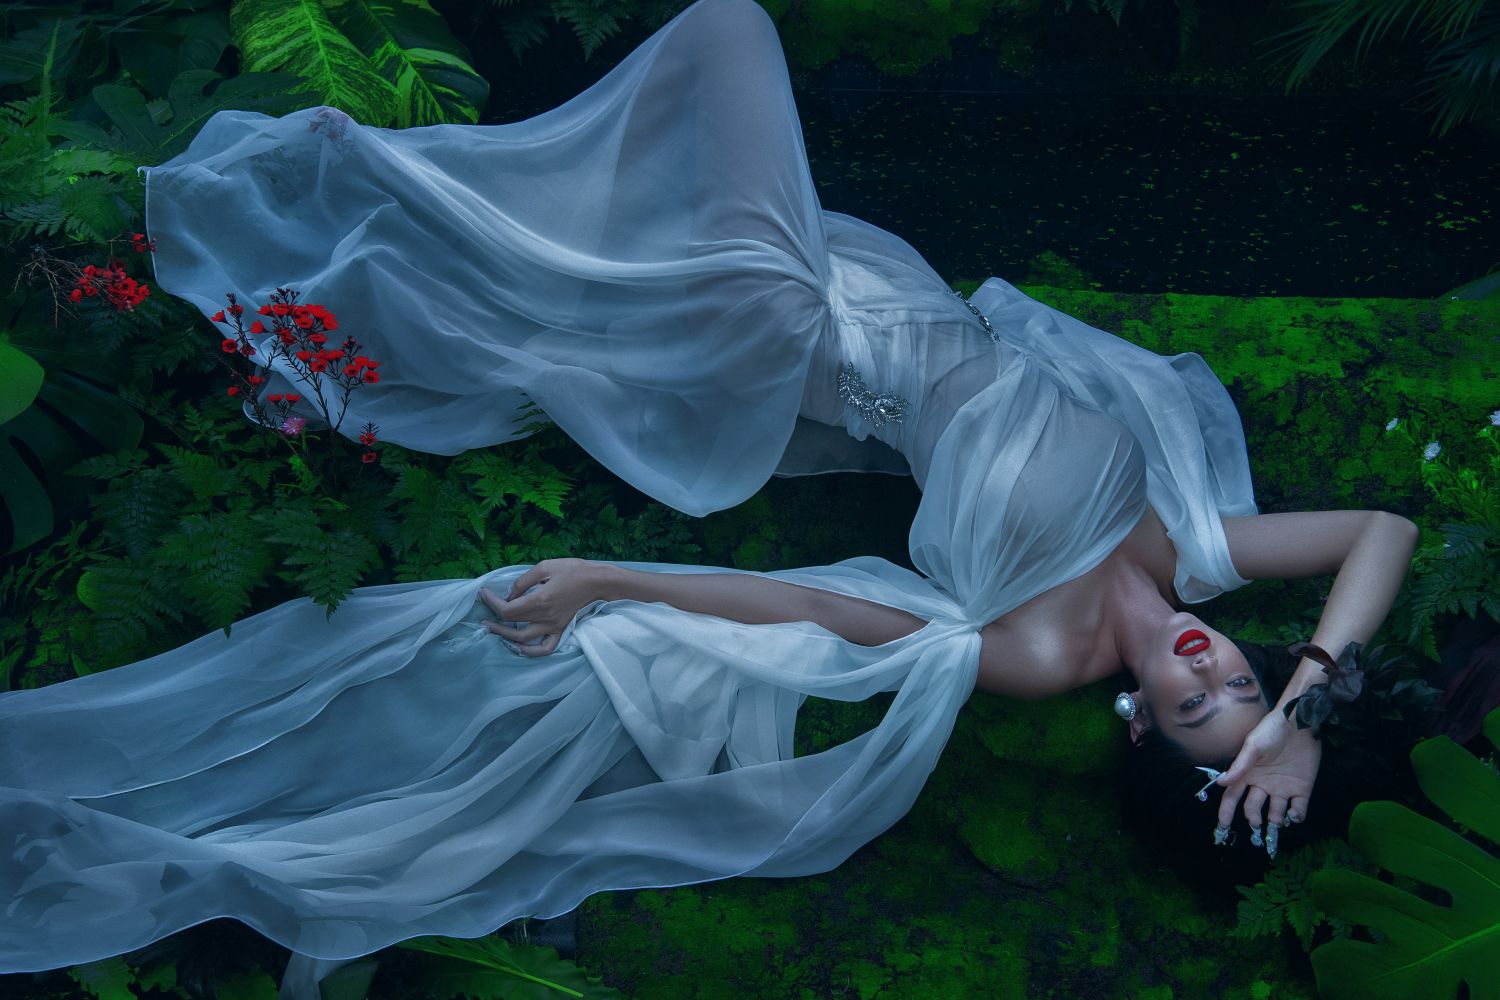 HOA HAU THUY TIEN 11 Diện trang phục xuyên thấu, Hoa hậu Thùy Tiên nóng bỏng thả dáng dưới hồ nước